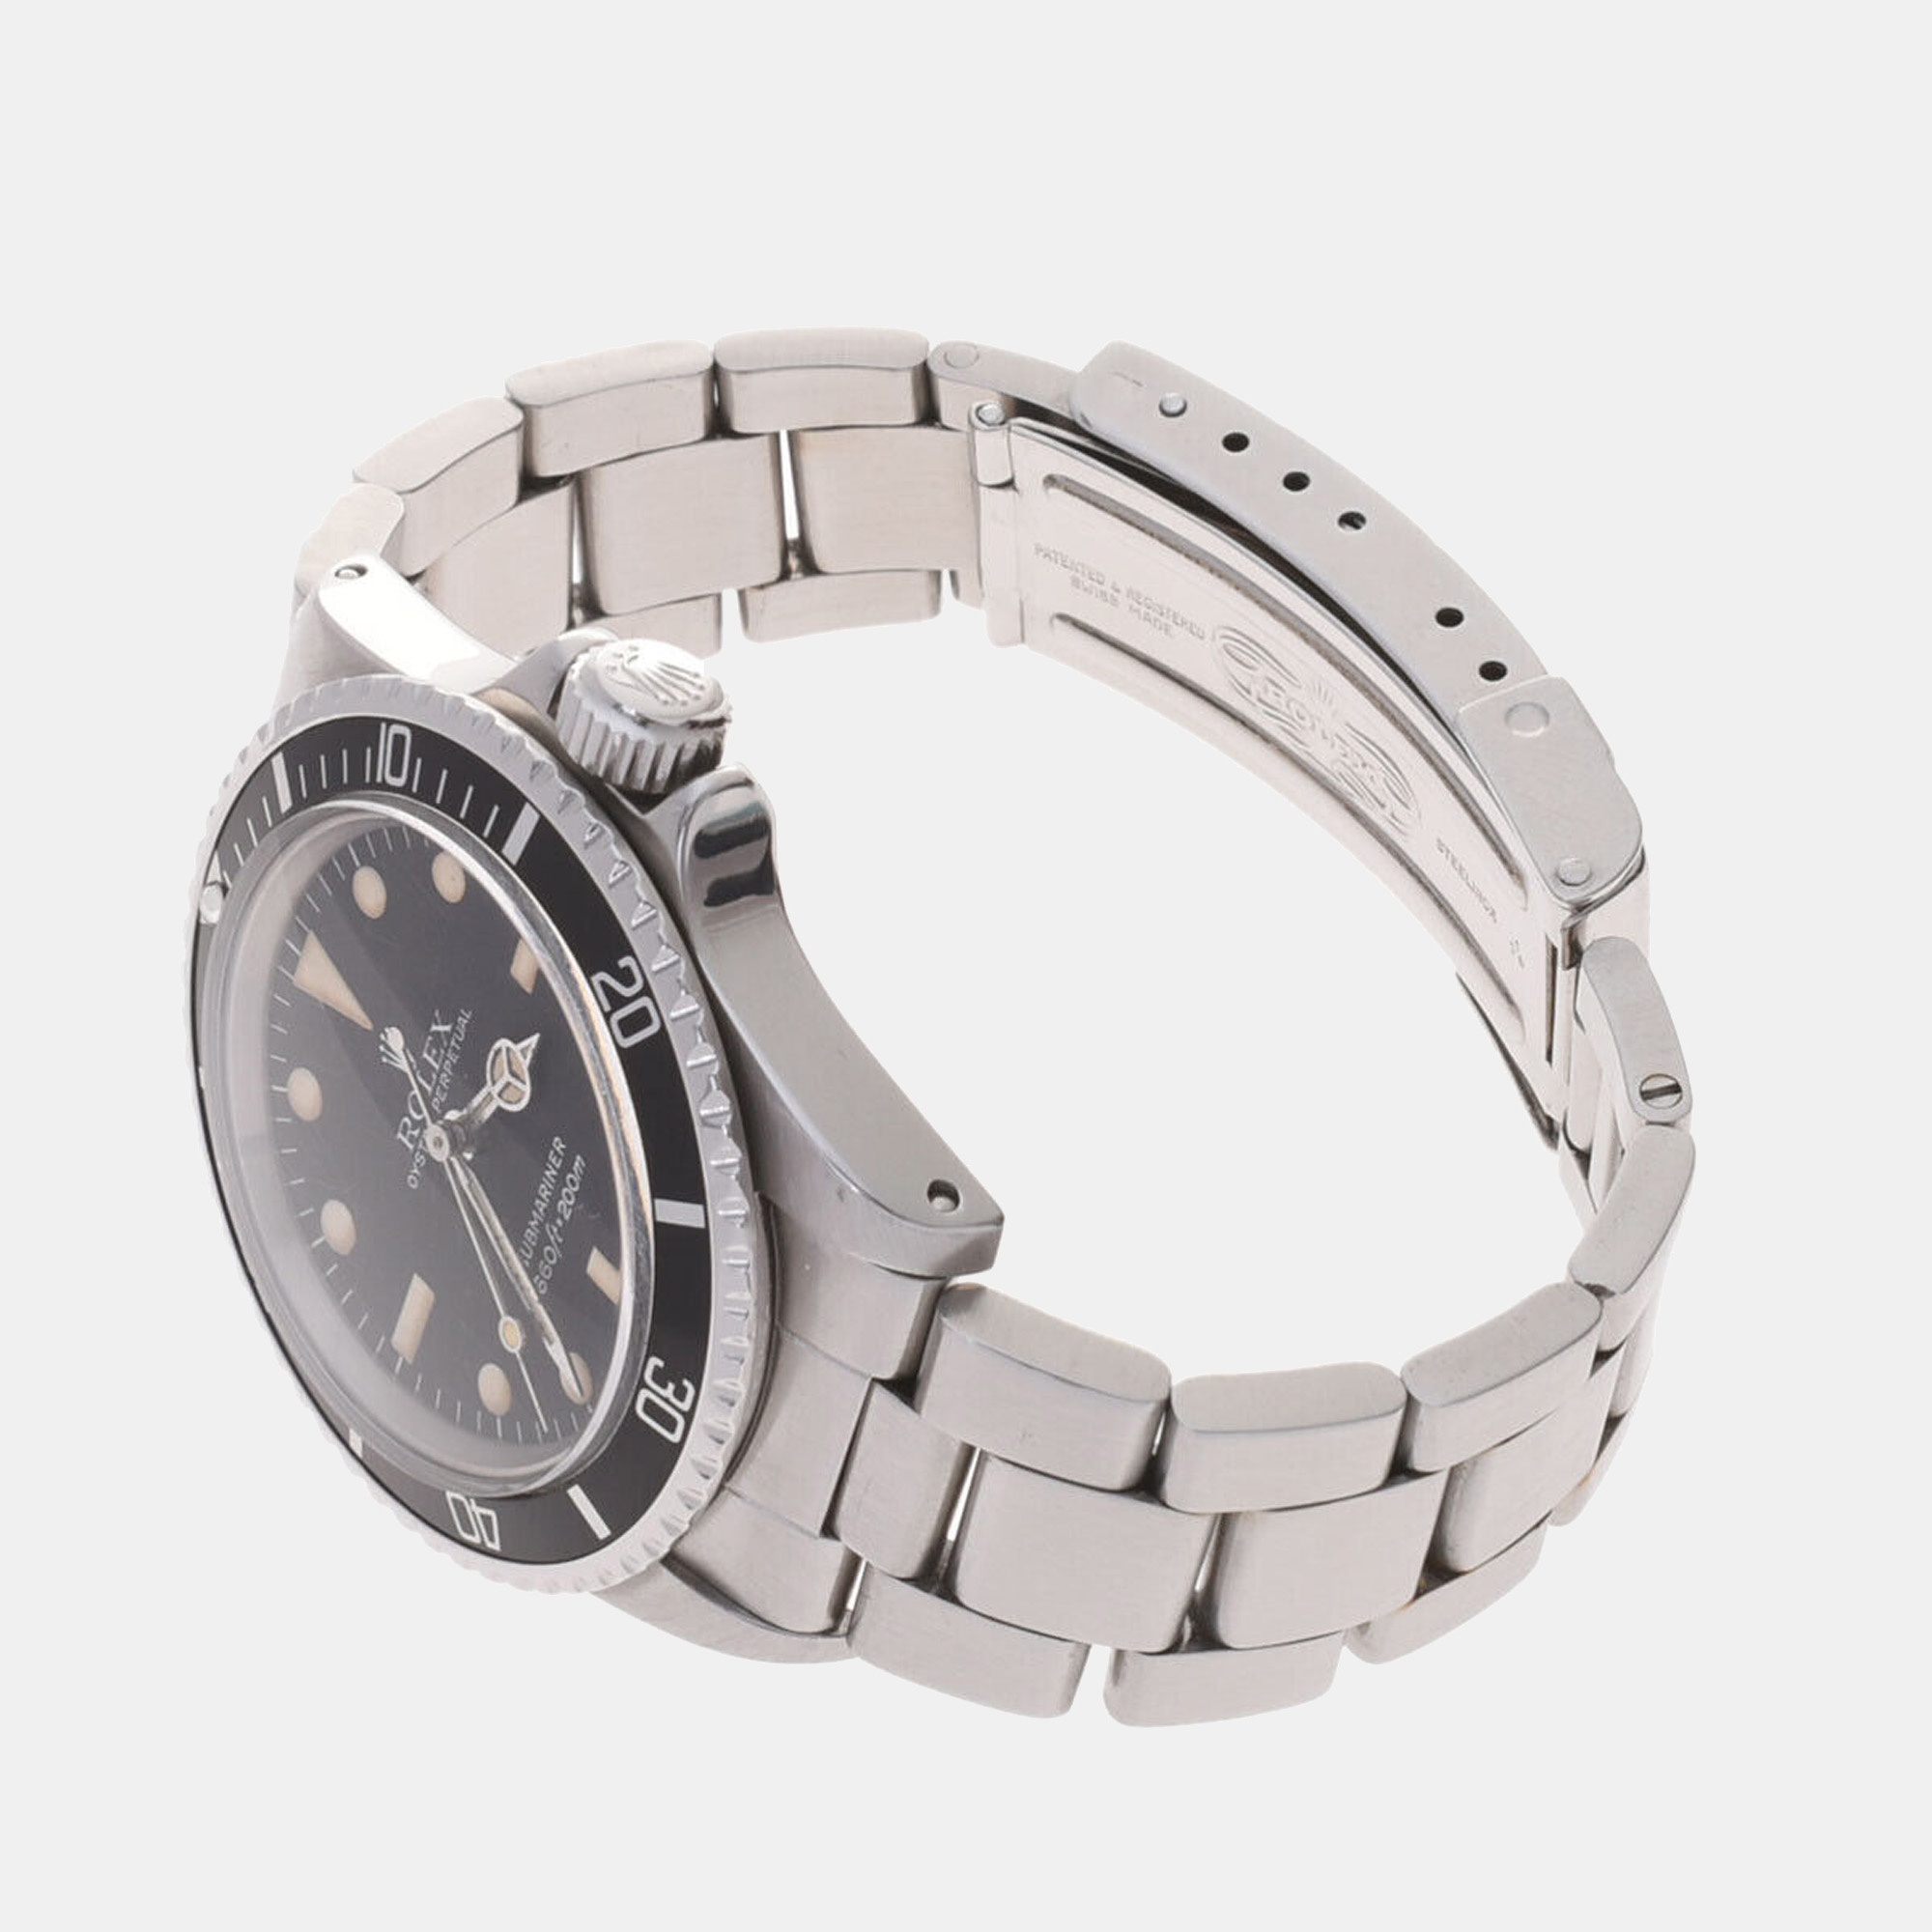 Rolex Black Stainless Steel Submariner 5513 Men's Wristwatch 40 Mm